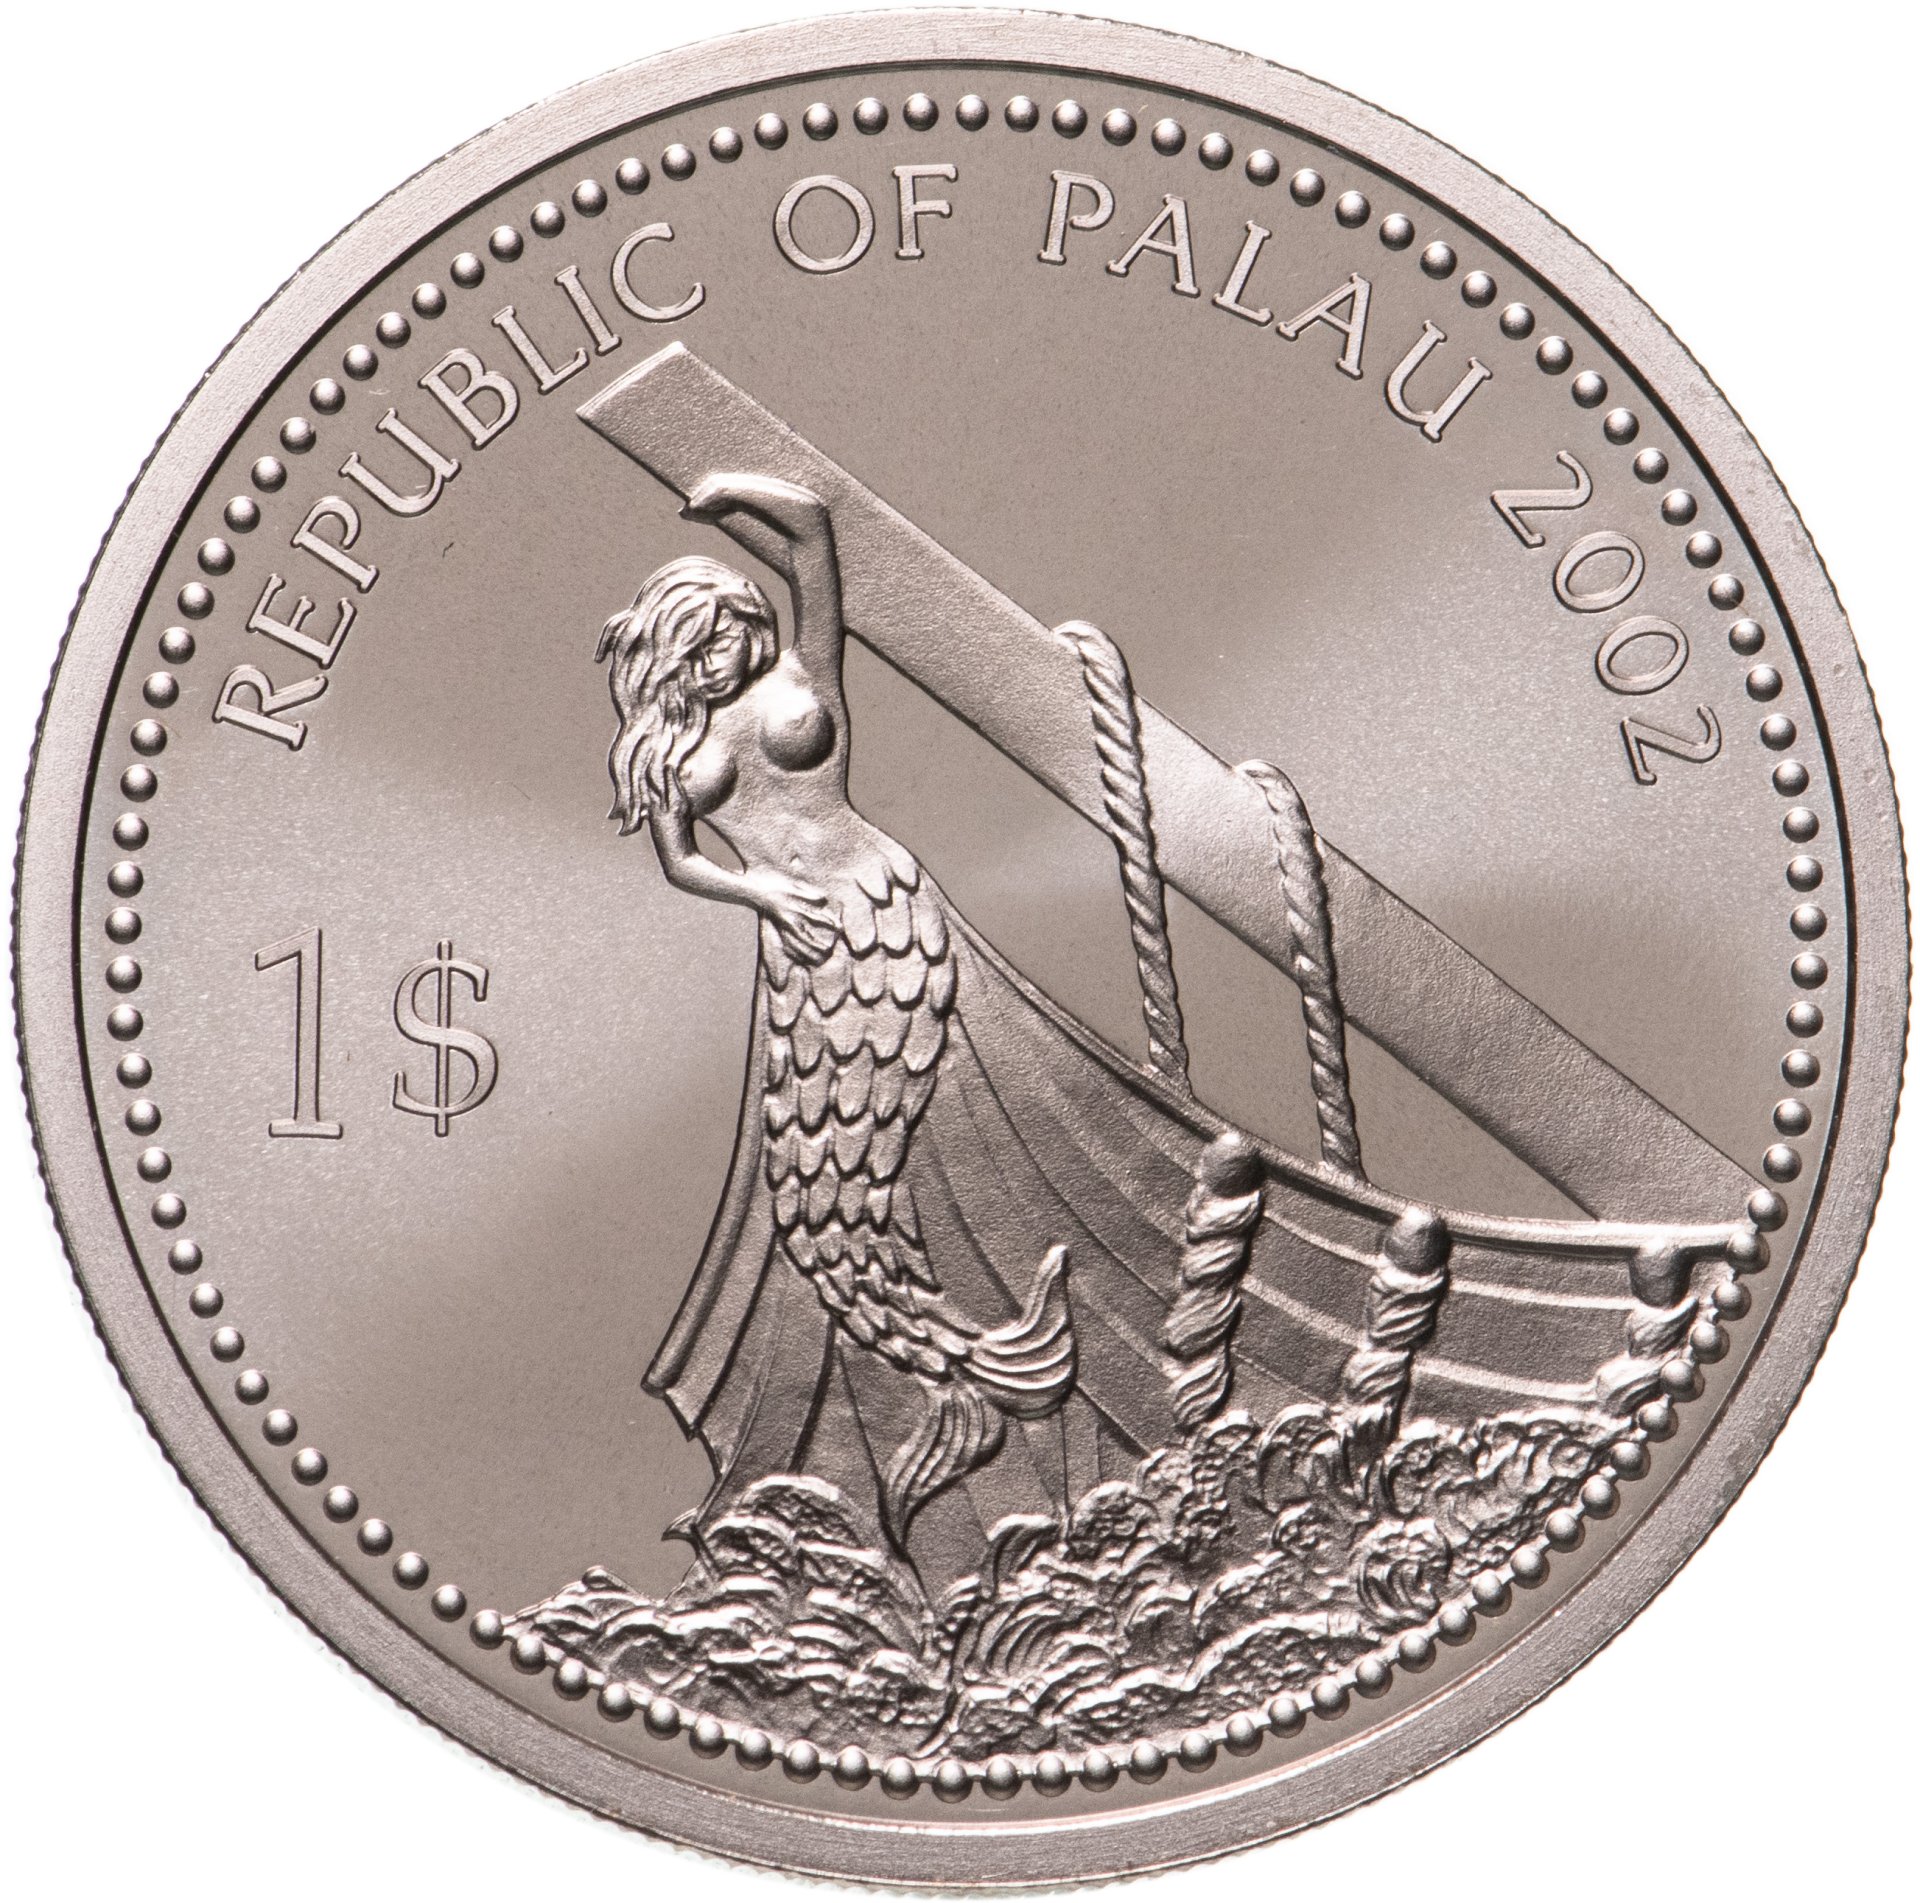 2002 долларов в рублях. Монеты Палау. 1 Доллар монета. Монета Республики Палау. 1 Доллар коллекция монет.